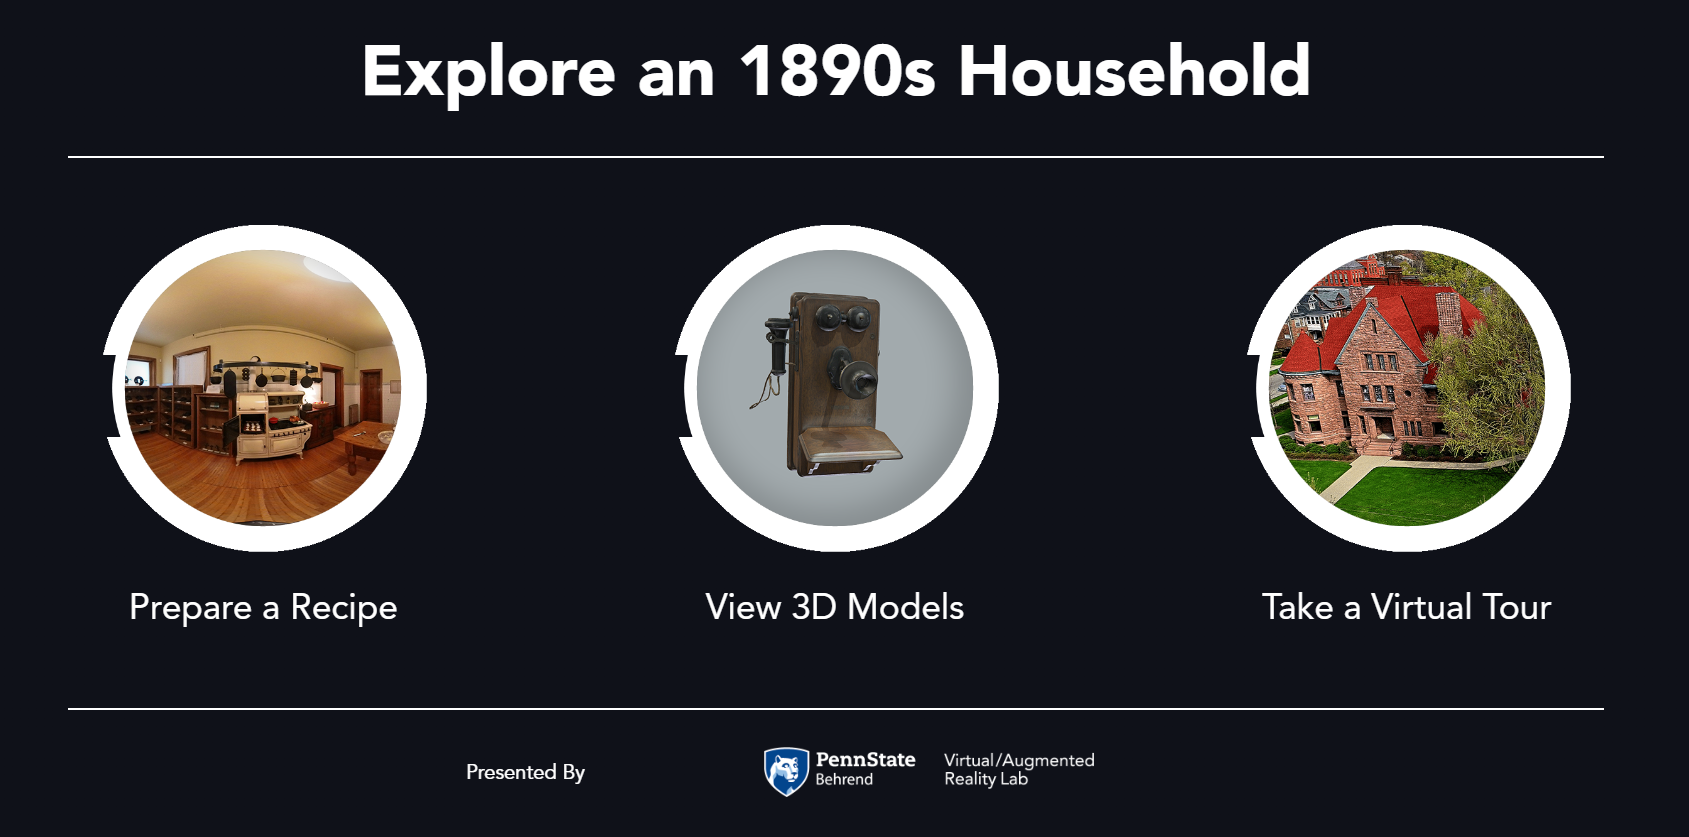 1890s household